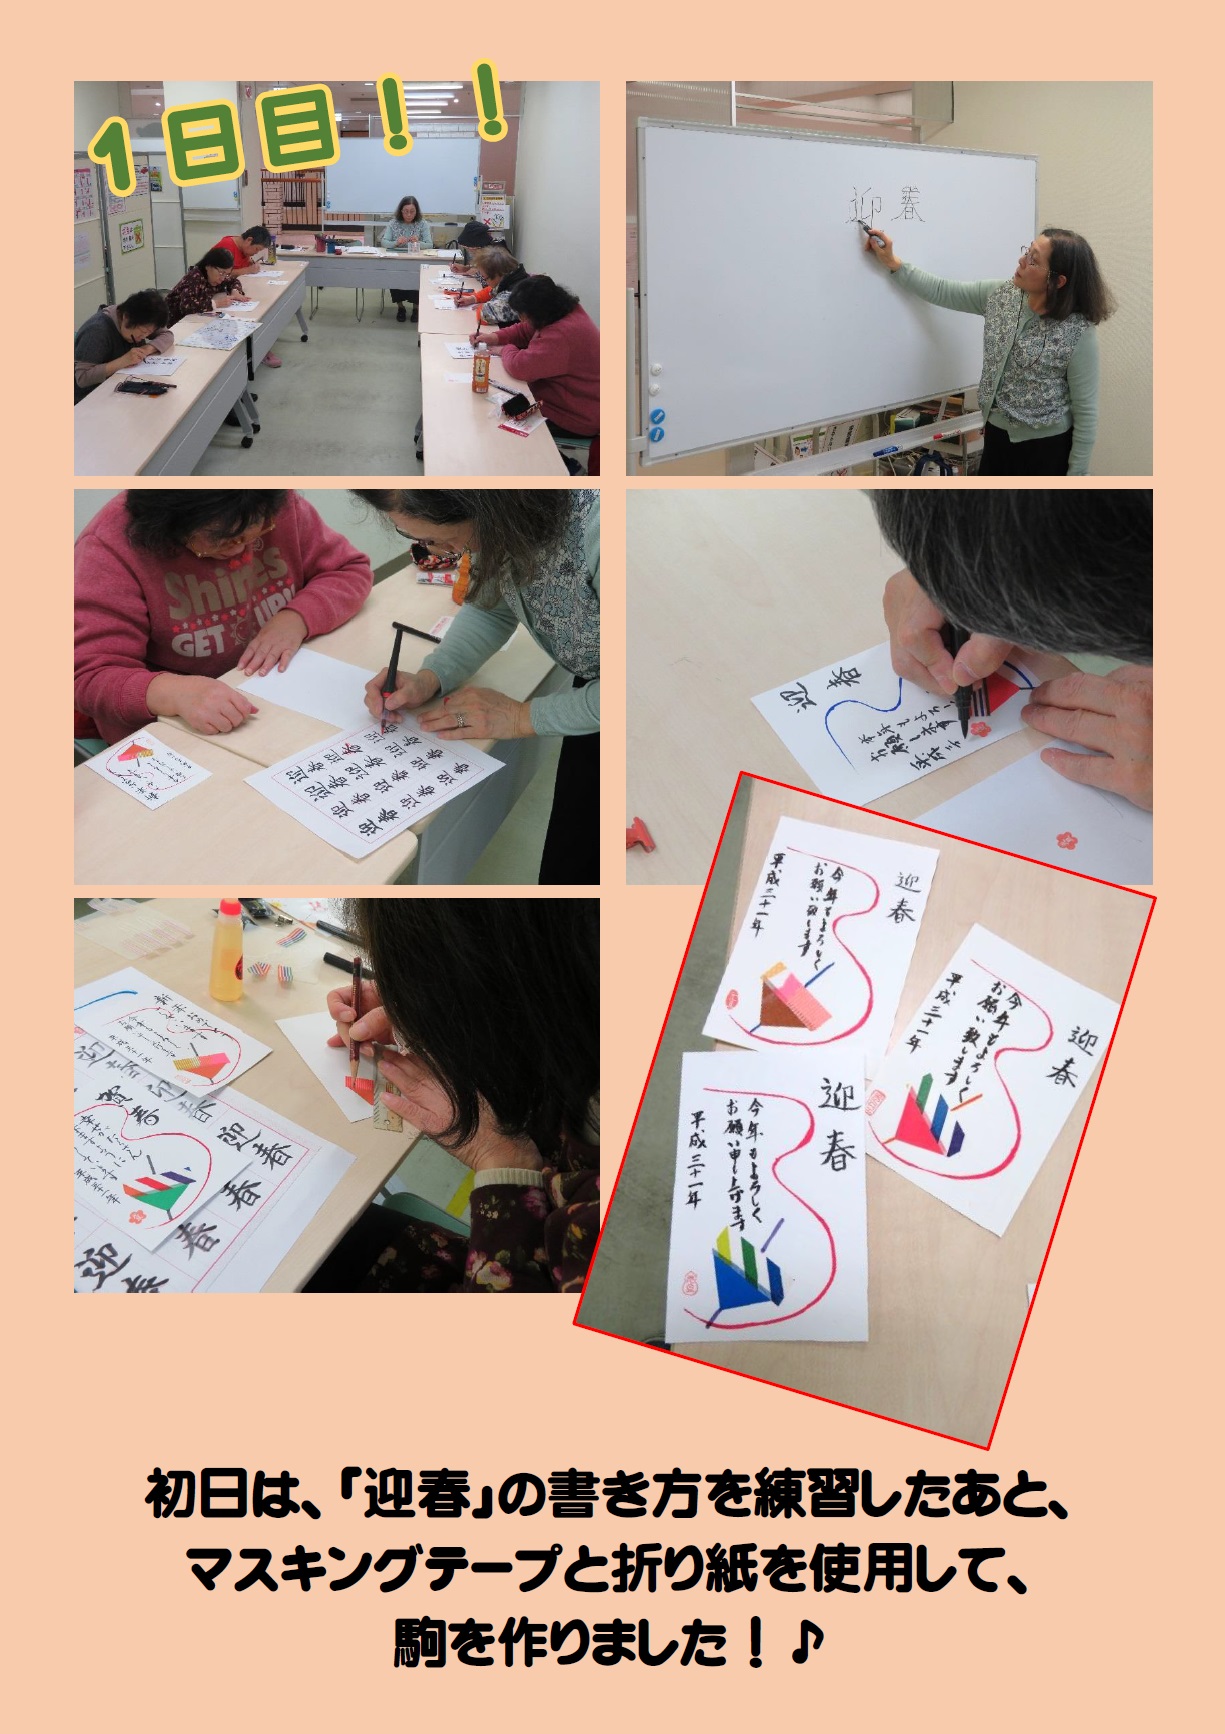 年賀状作り教室 手書き を行いました 活動レポート 熊本市障がい者福祉センター希望荘